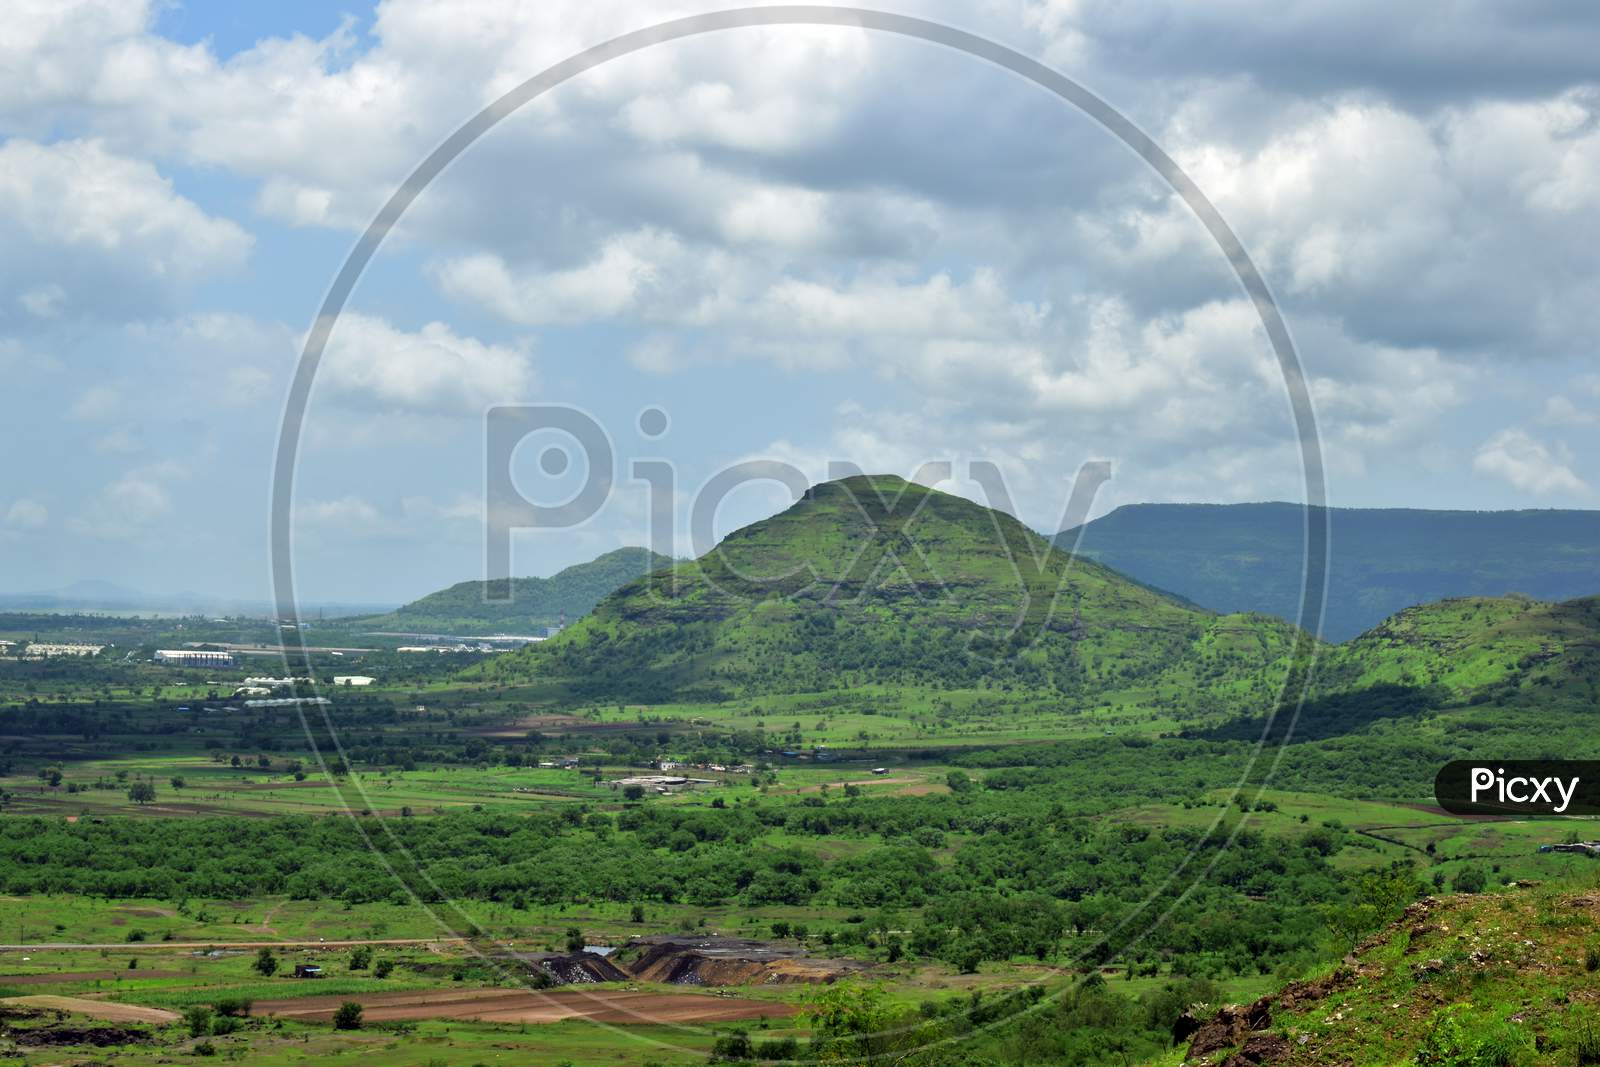 The beautiful mountain landscape in Maharashtra India